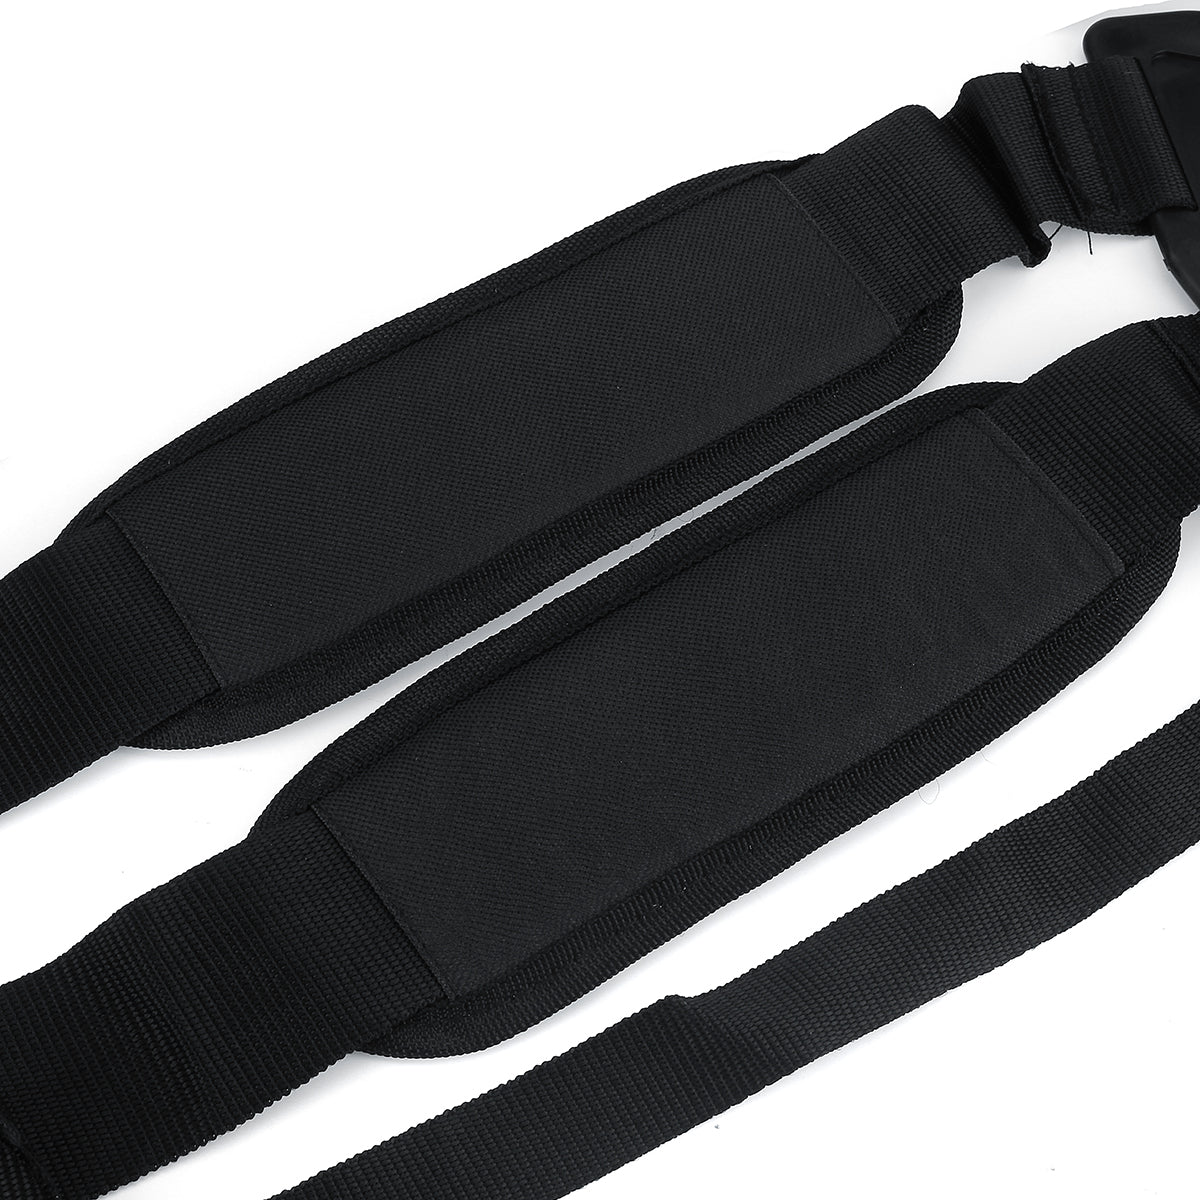 Adjustable Mower Trimmer Strimmer Harness Strap Belt Dual Shoulder Nylon Holder